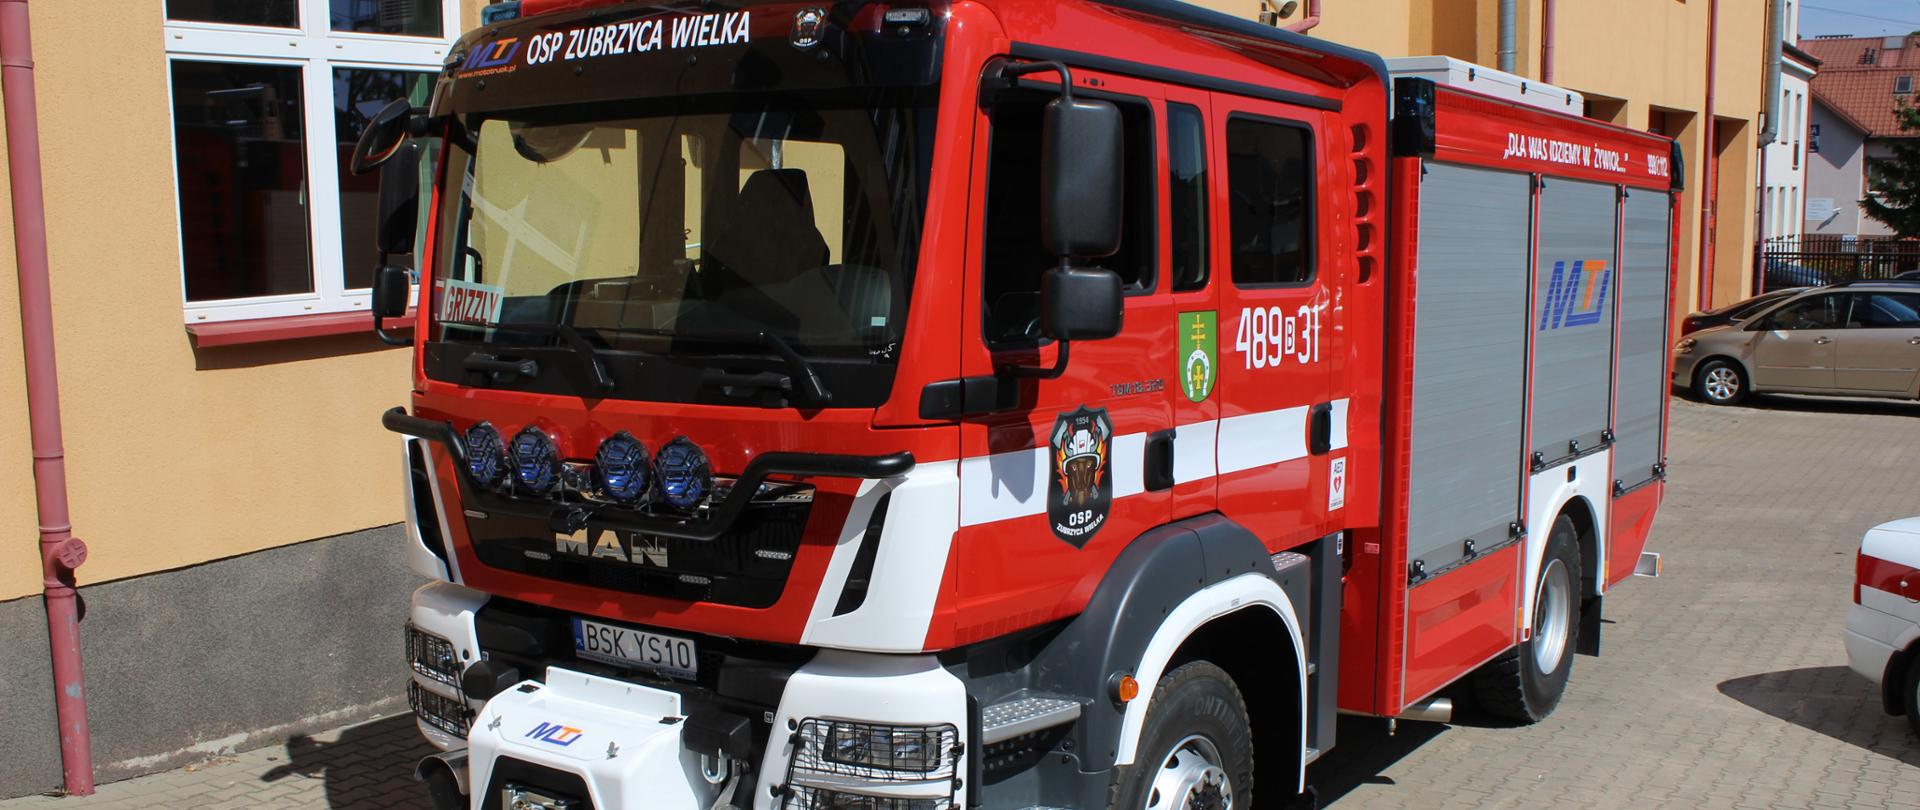 Nowy samochód gaśniczy Ochotniczej Straży Pożarnej w Zubrzycy Wielkiej